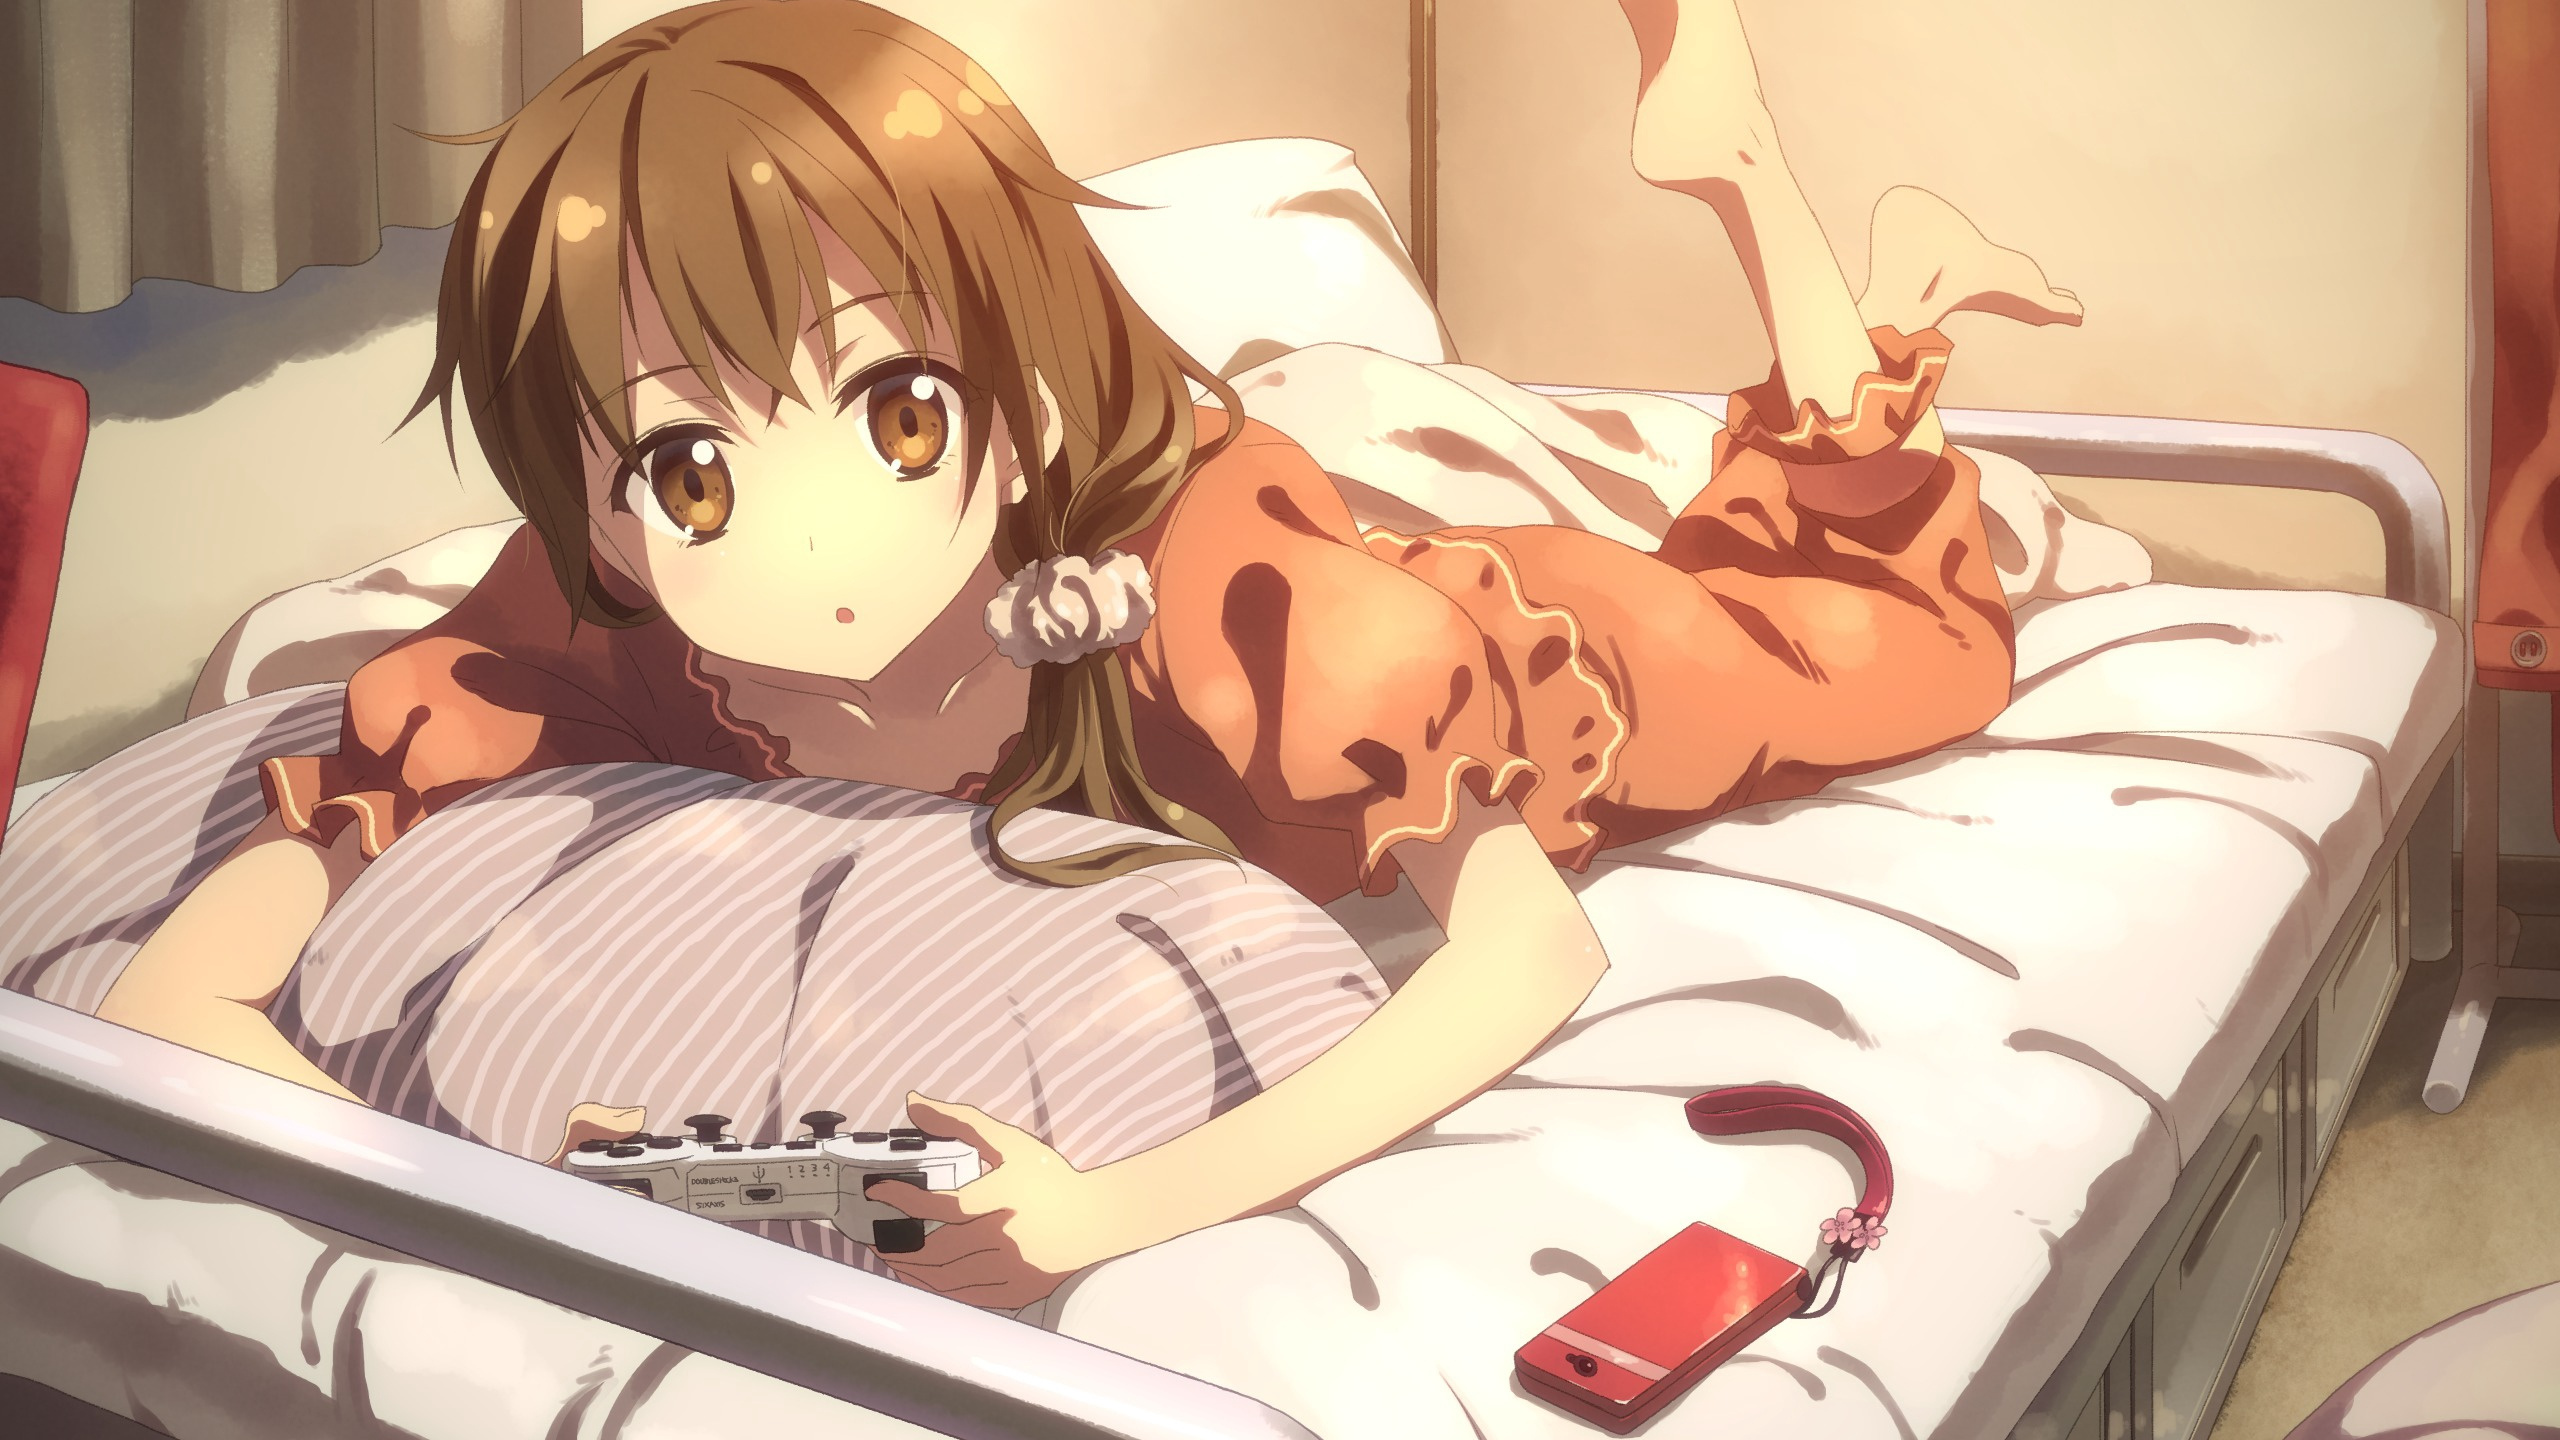 Braunhaarige Mädchen Anime-Figur Auf Dem Bett Liegend. Wallpaper in 2560x1440 Resolution